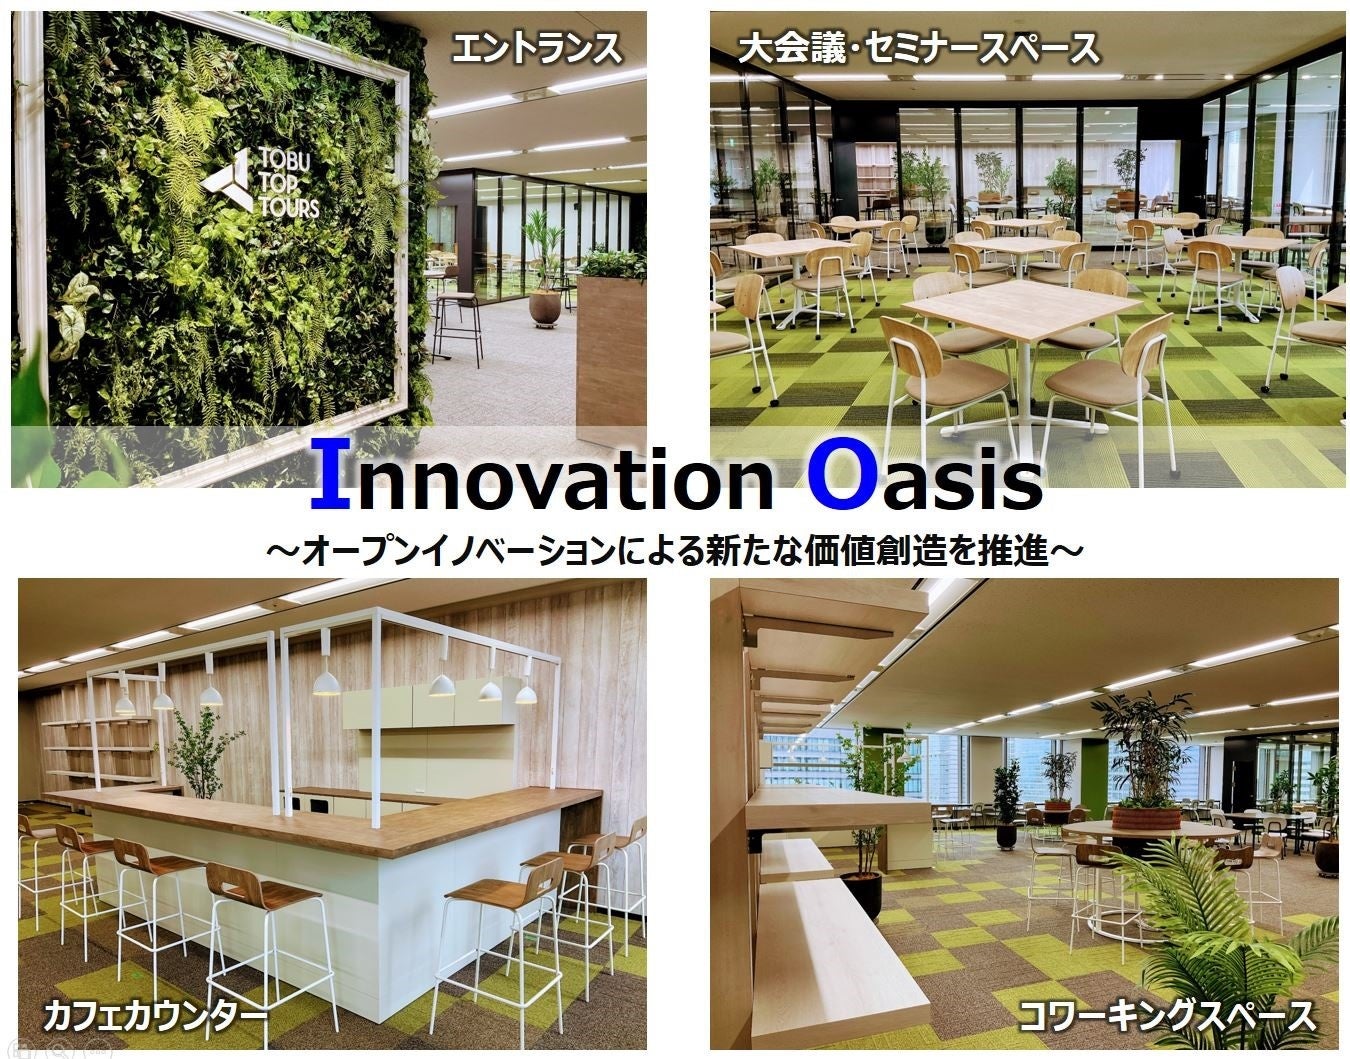 「Innovation Oasis（イノベーションオアシス）」イメージ